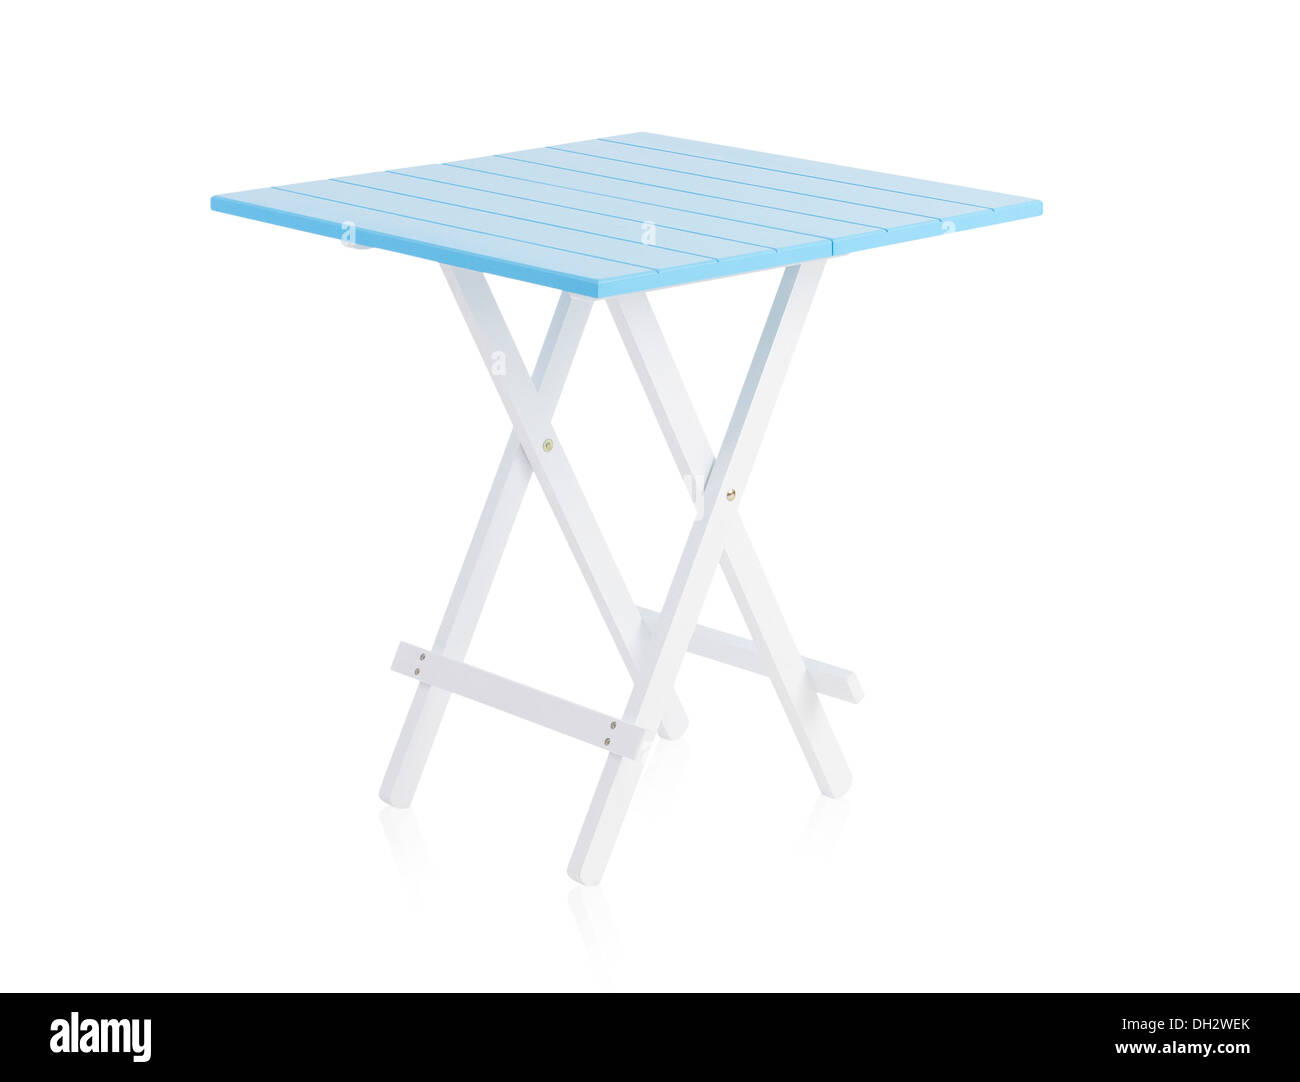 Table en bois bleu isolé sur fond blanc Banque D'Images